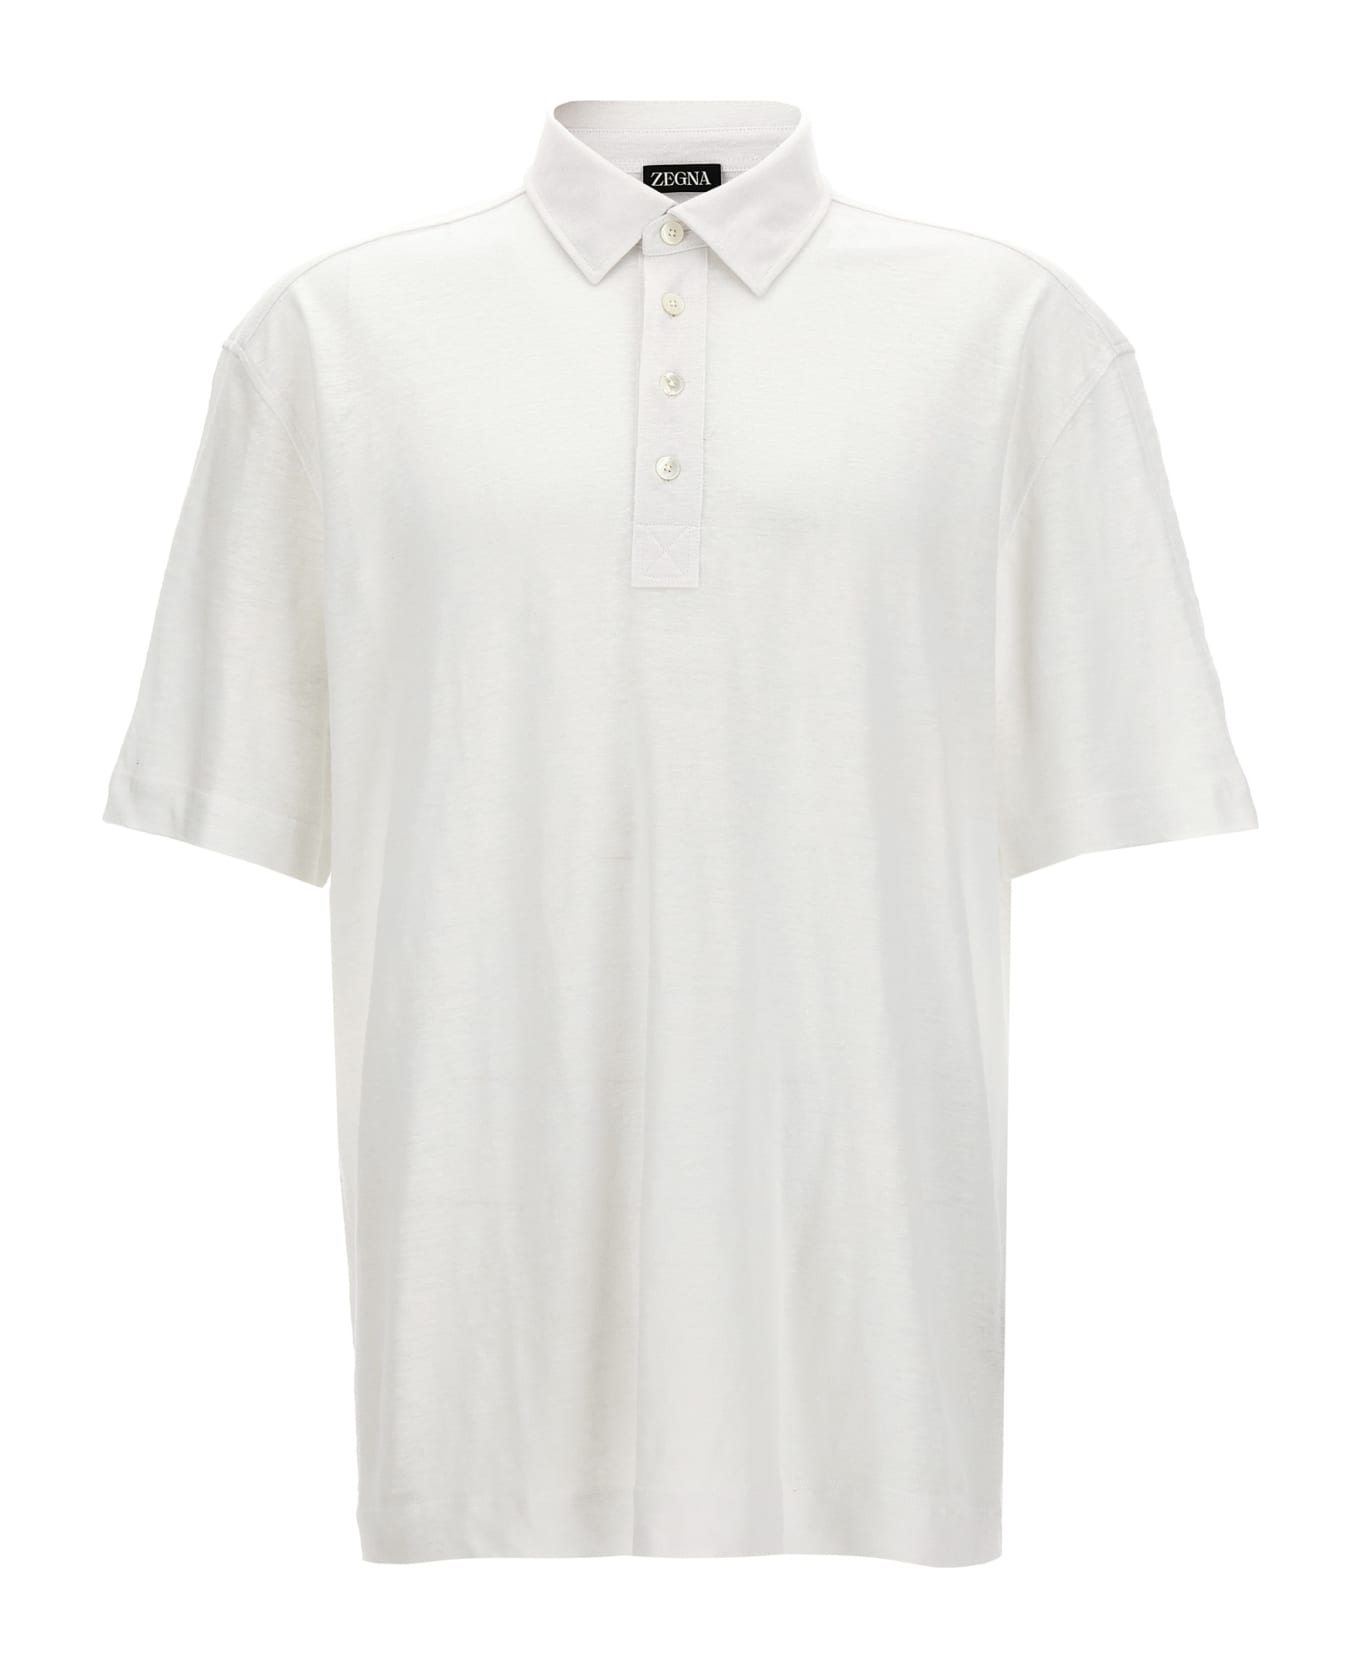 Zegna Linen Polo Shirt - White ポロシャツ